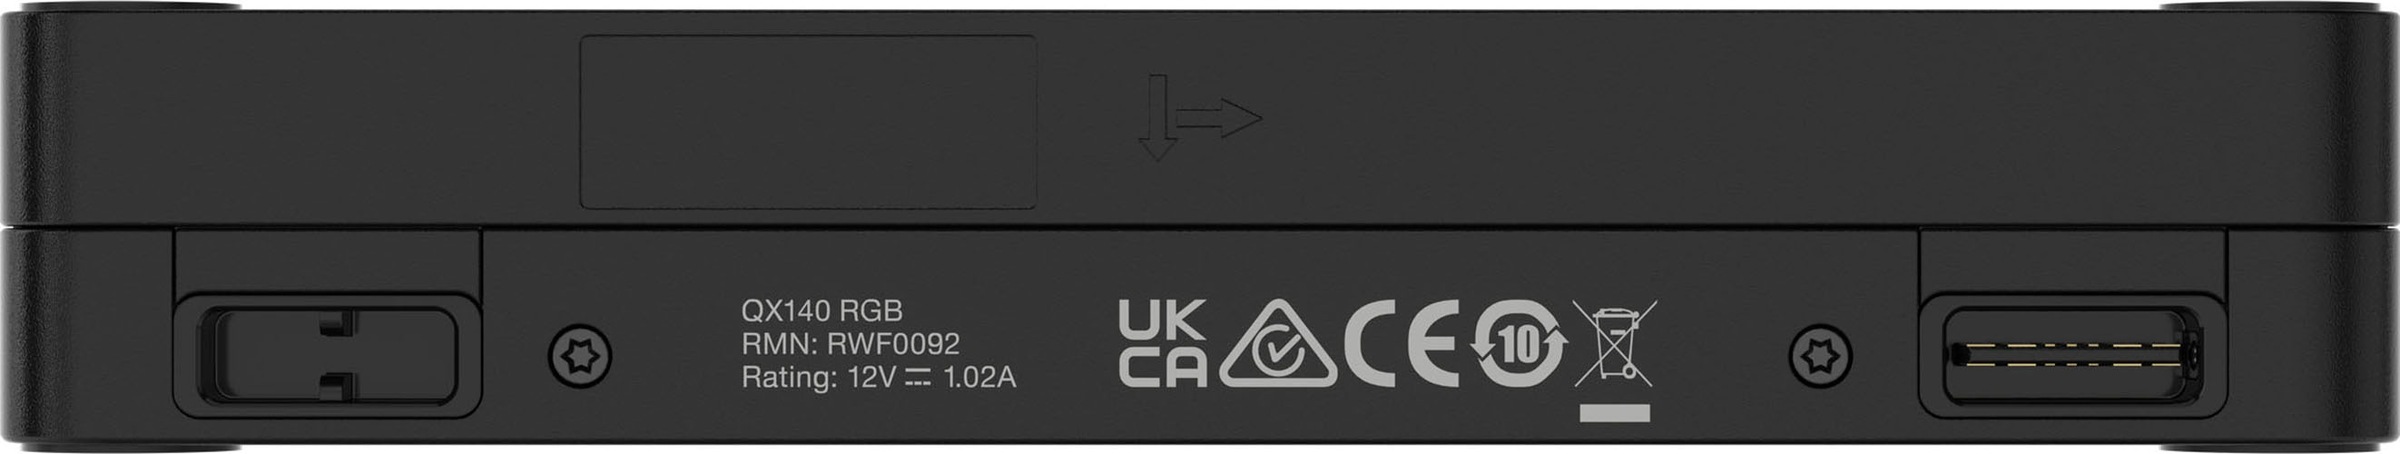 Corsair Gehäuselüfter »iCUE LINK QX140 RGB 140-mm-PWM-Lüfter-Starter-Kit«